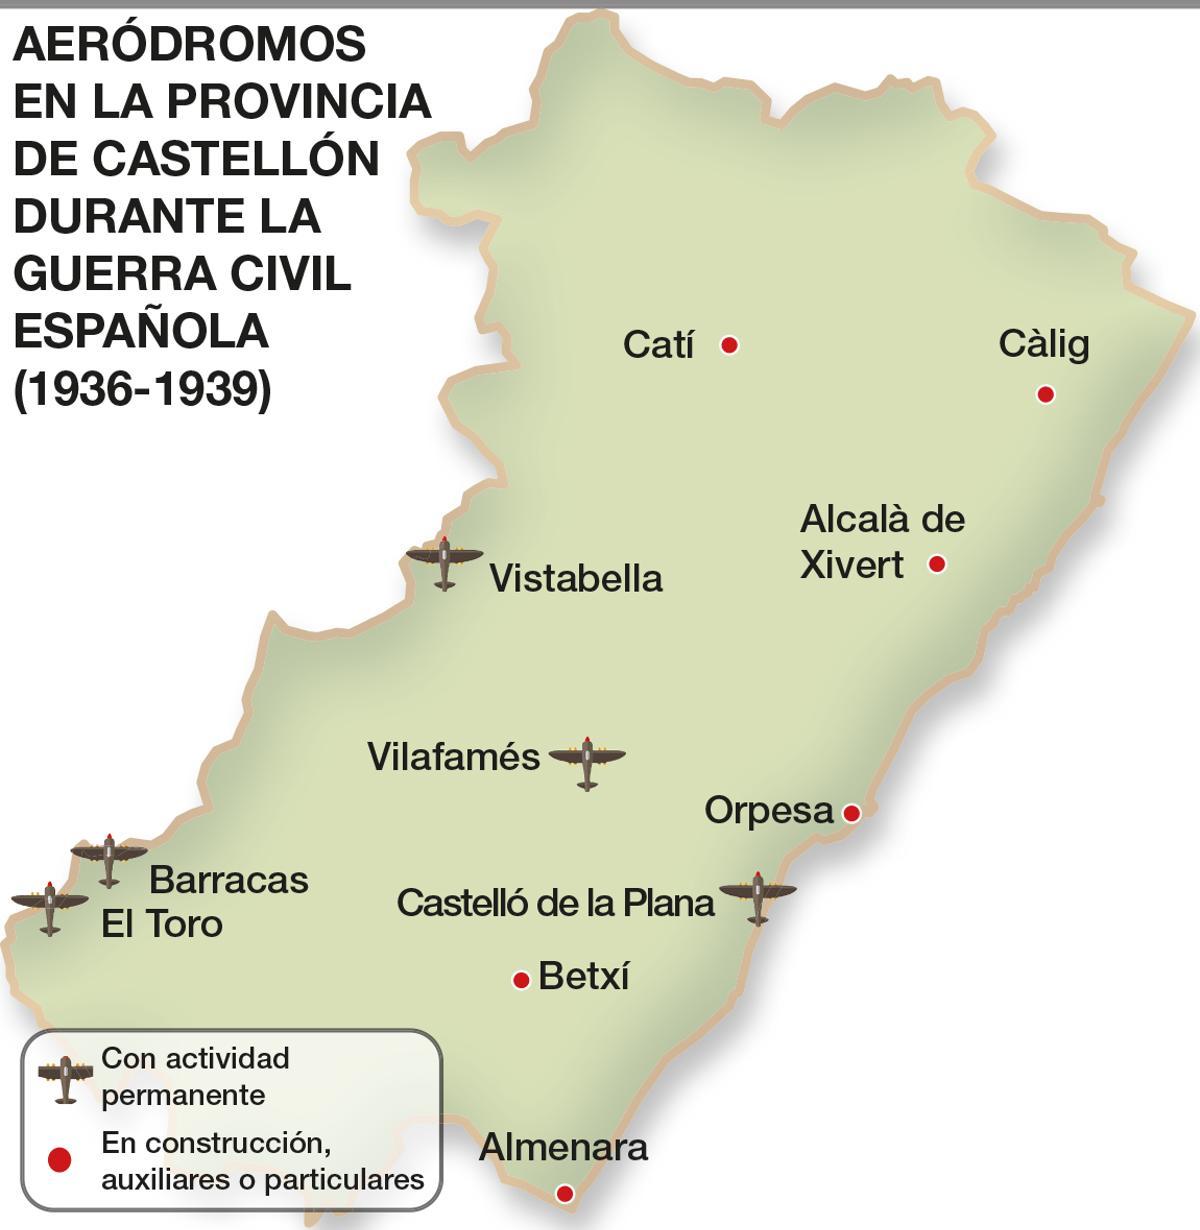 Mapa de aeródormos en la provincia de Castellón durante la guerra civil